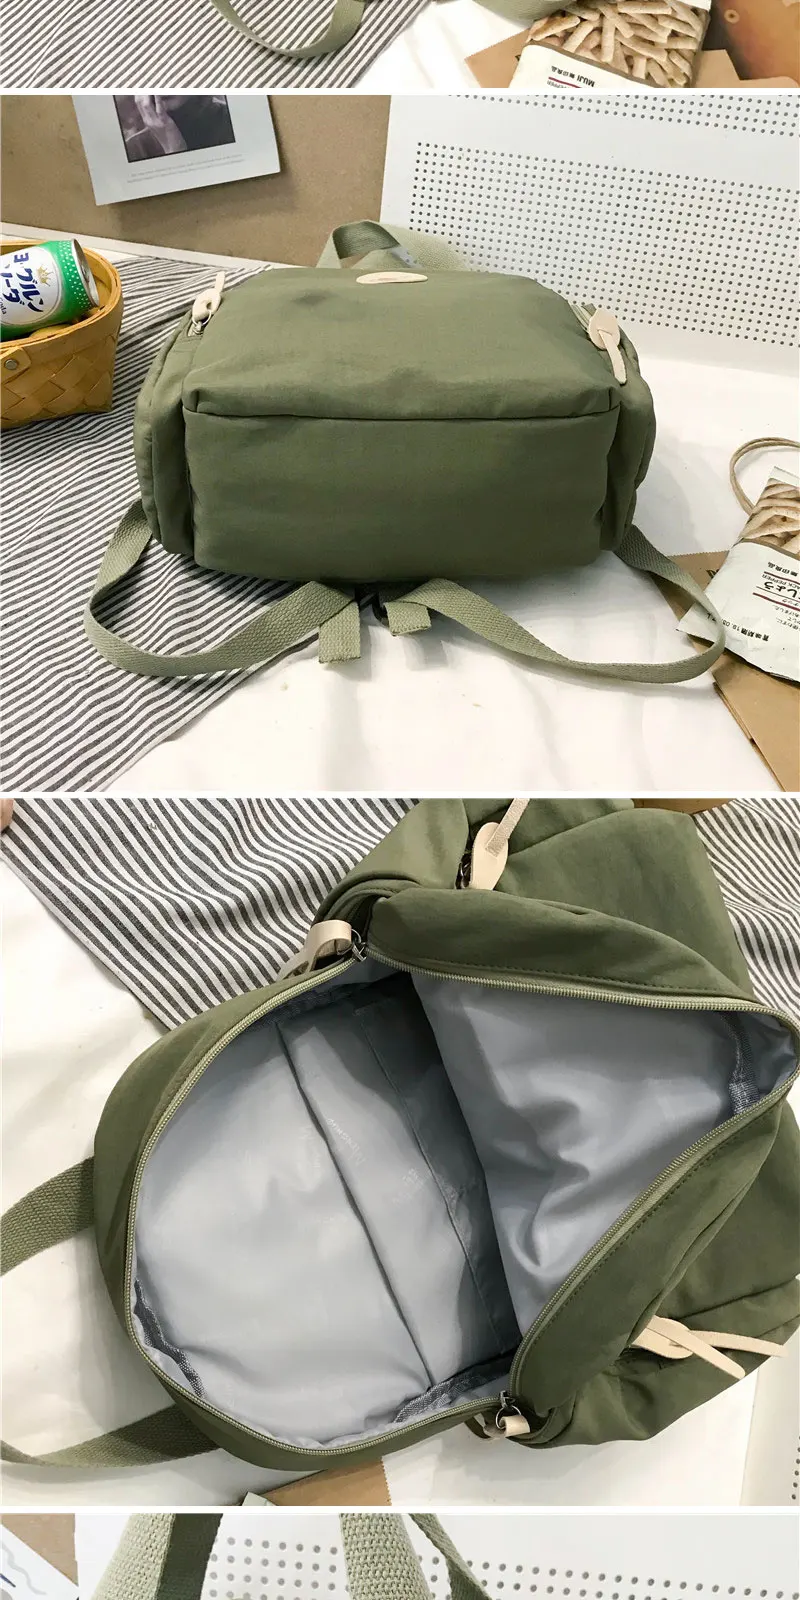 Водонепроницаемый нейлоновый рюкзак для женщин маленький школьный рюкзак модный женский рюкзак для школьницы женский рюкзак Mochilas